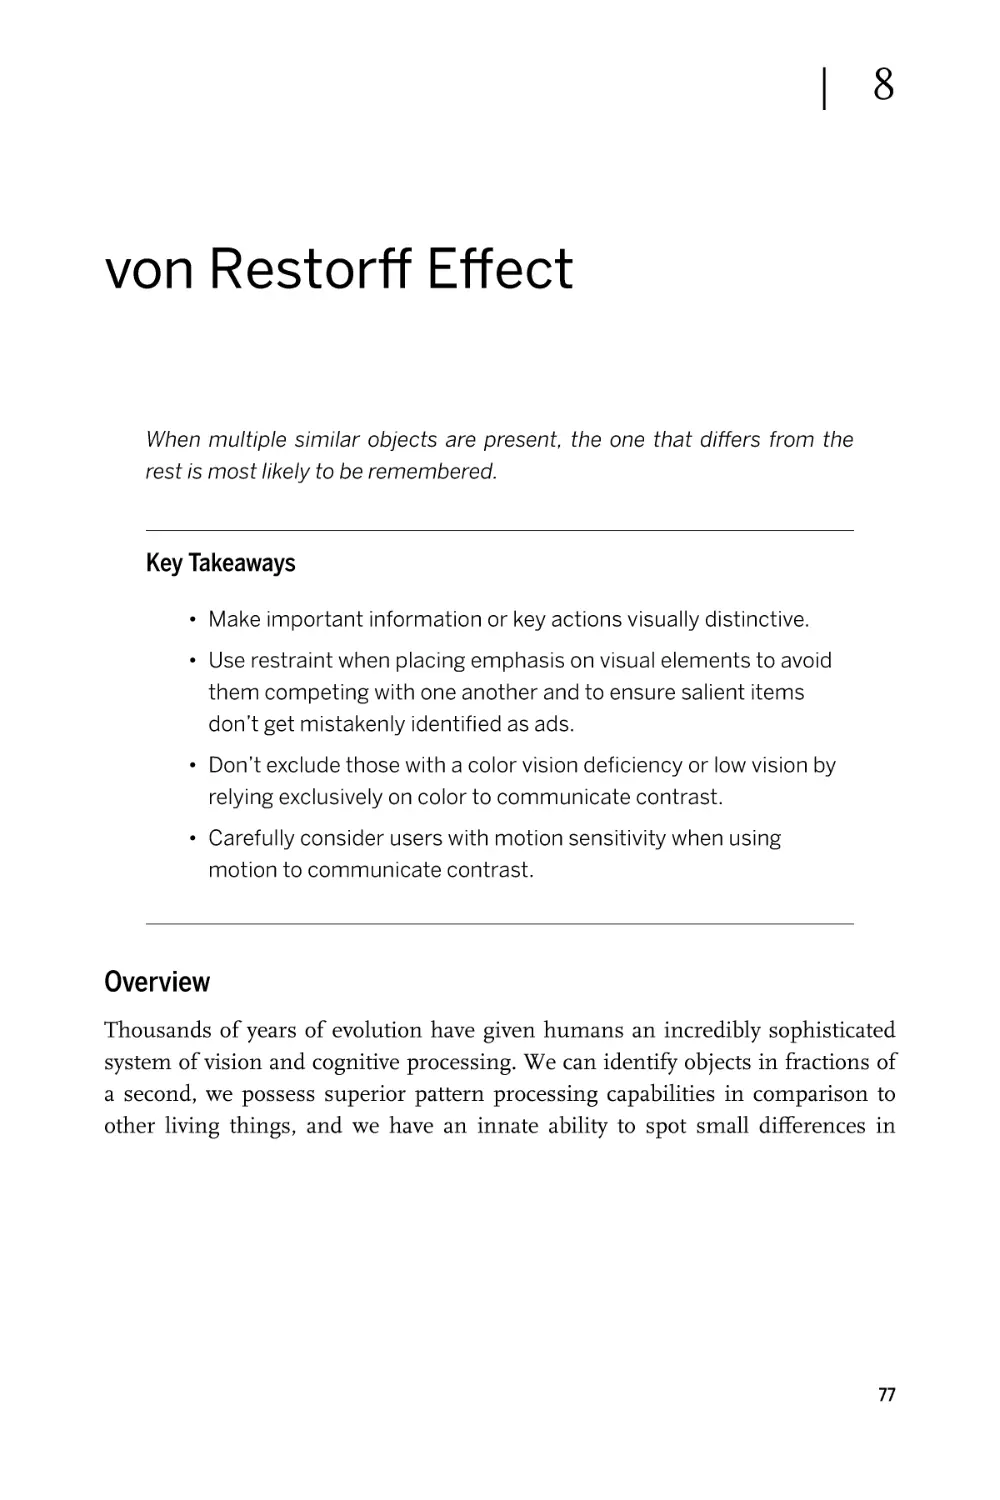 Chapter 8. von Restorff Effect
Overview